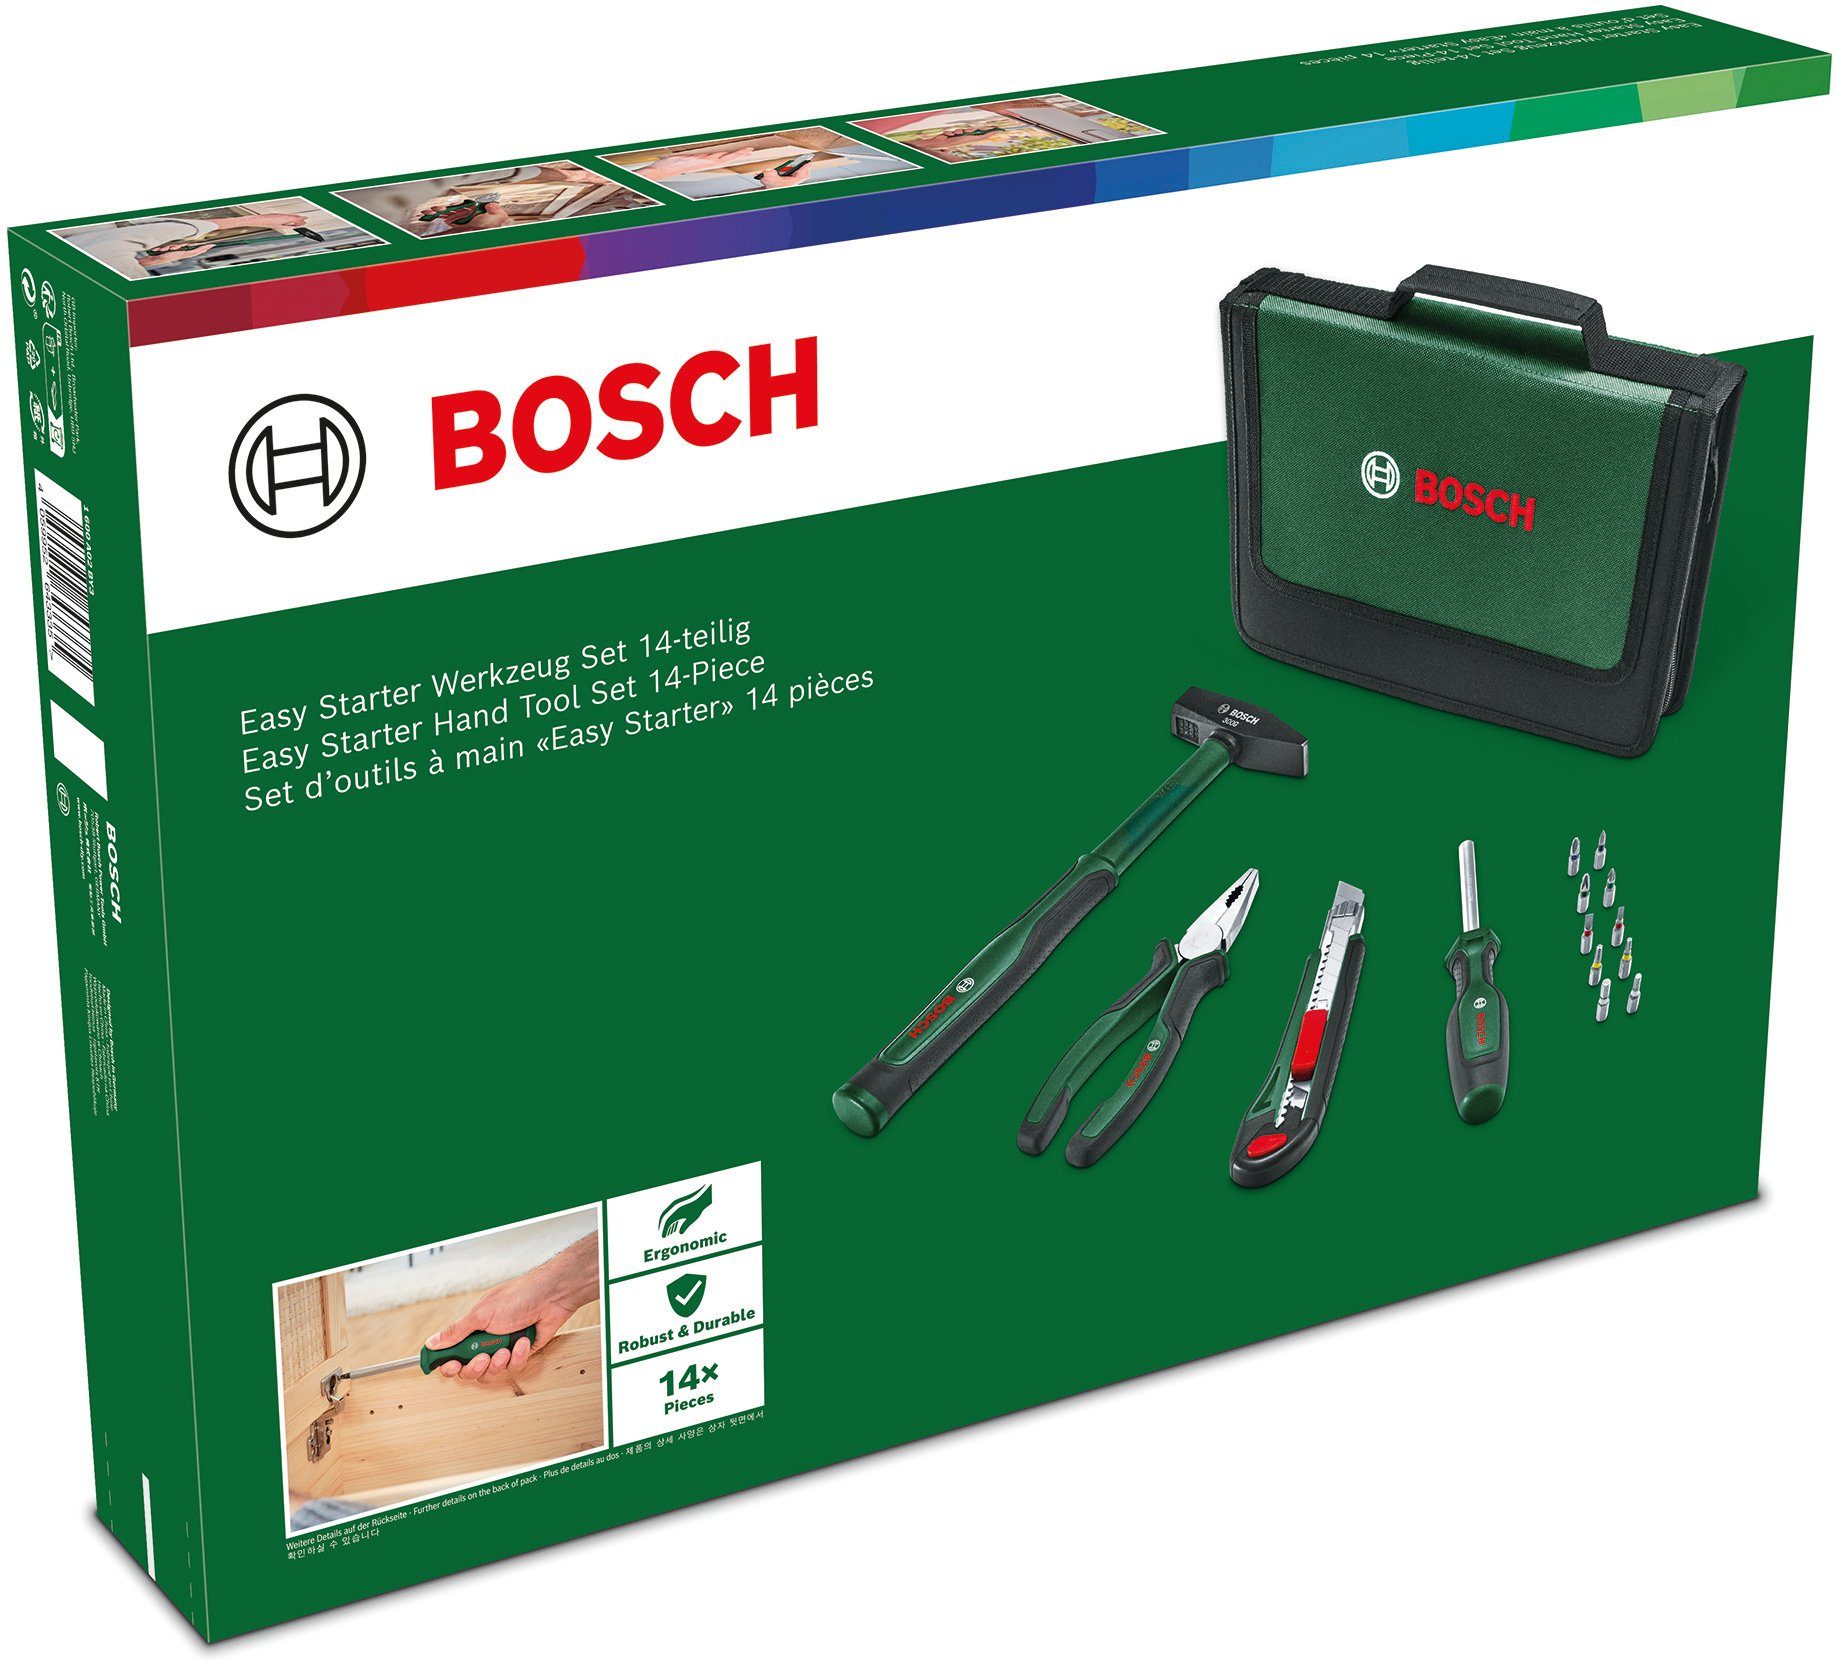 & Set, Home Starter Werkzeugset Garden Bosch 14-teilig Werkzeug Easy